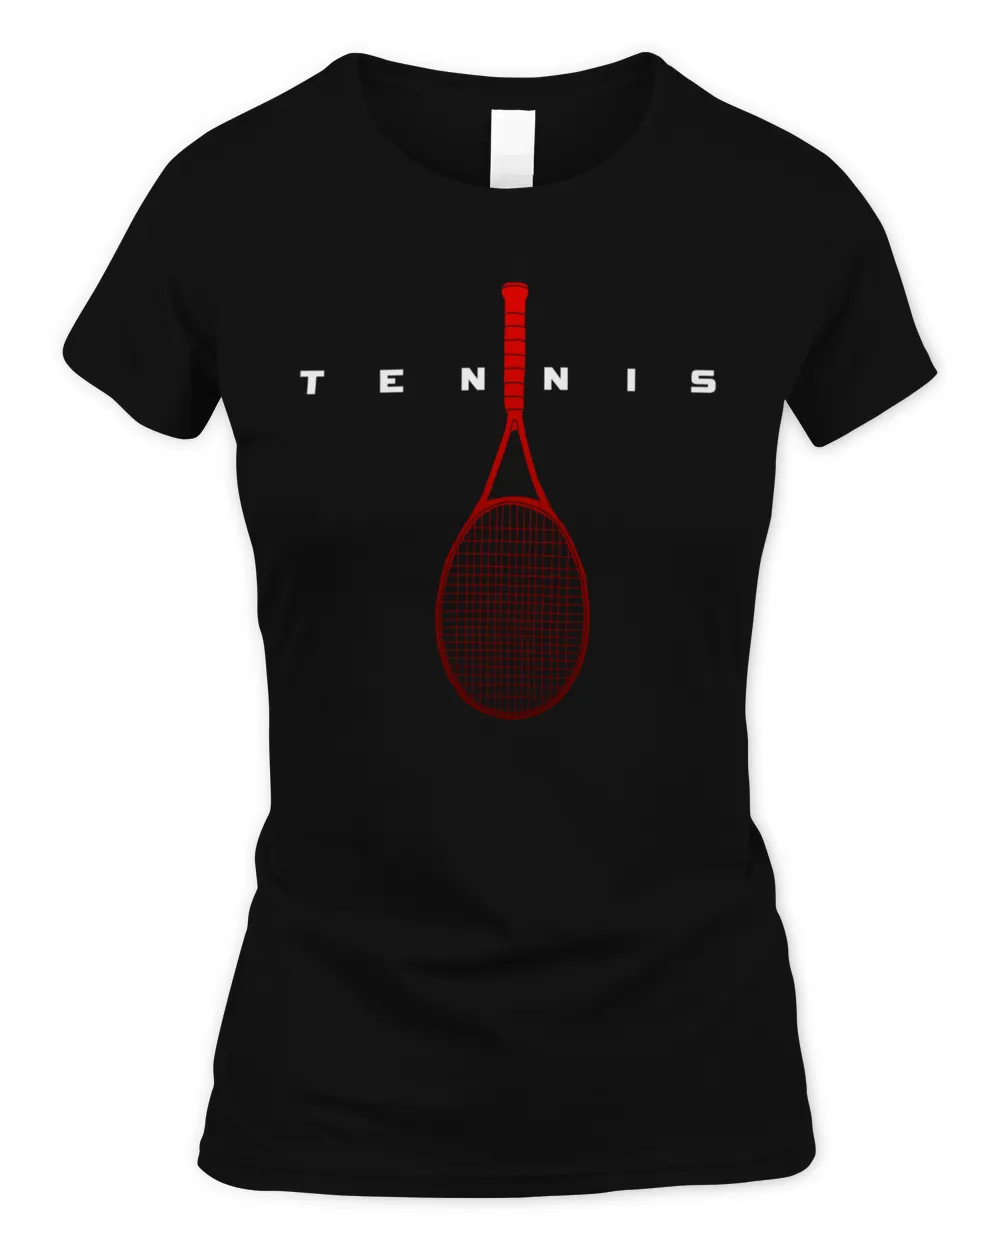 Tennis Love Tees